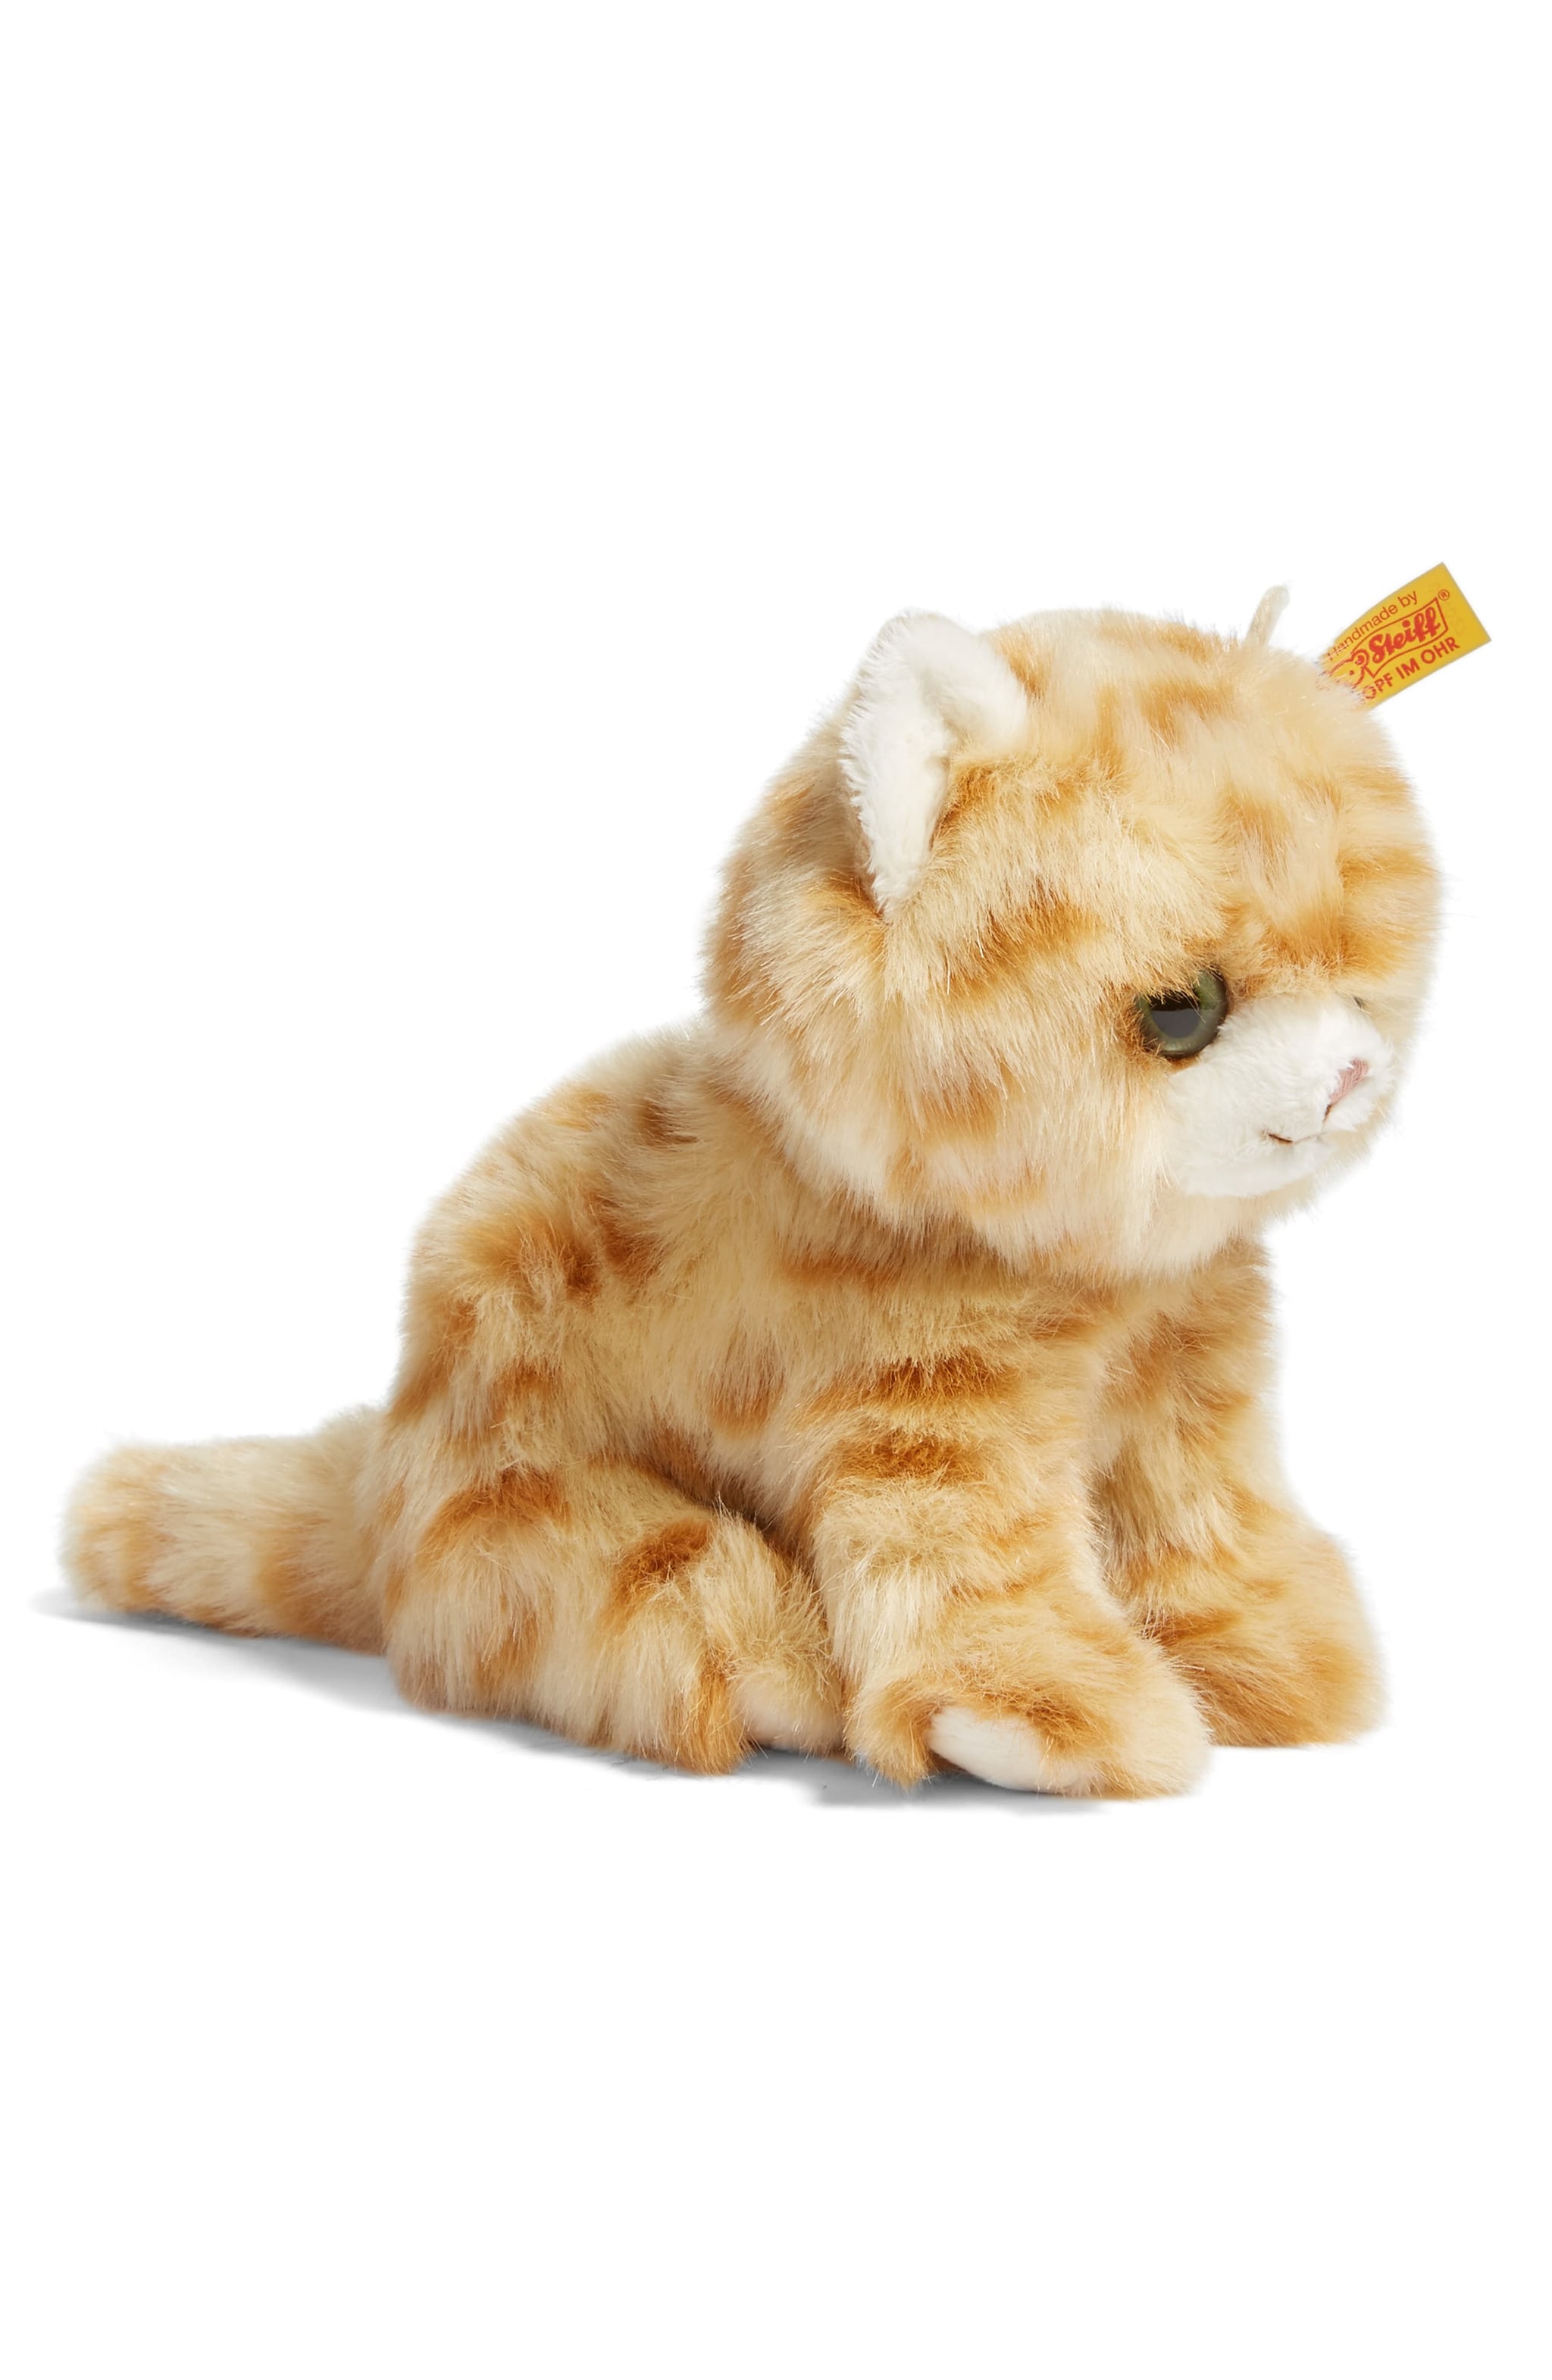 stuffed animal kitten